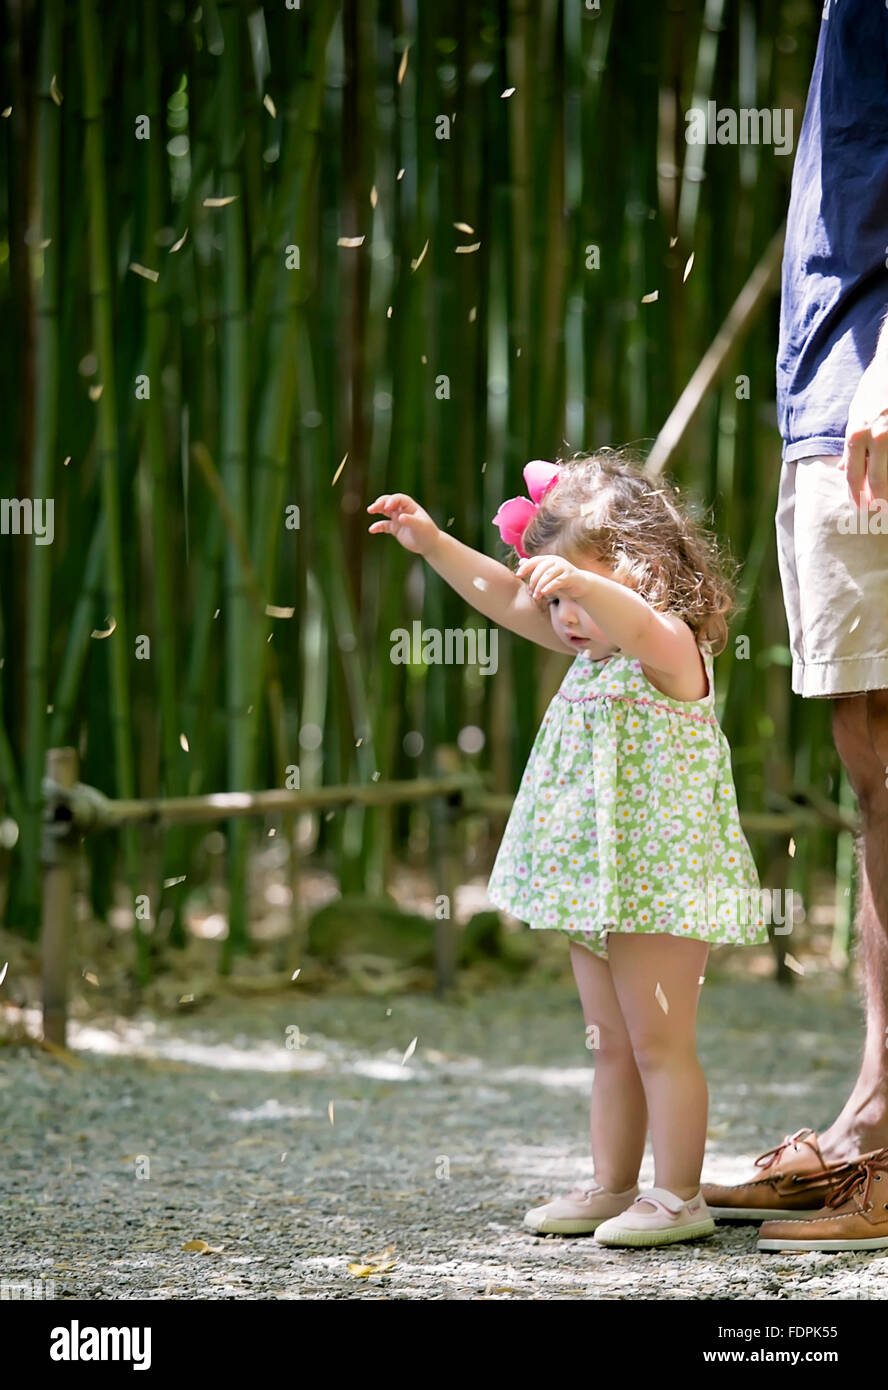 Bild von einem Kleinkind Mädchen steht in einem Bambusgarten versucht, ihre Blätter zu fangen, wie sie fallen. Stockfoto